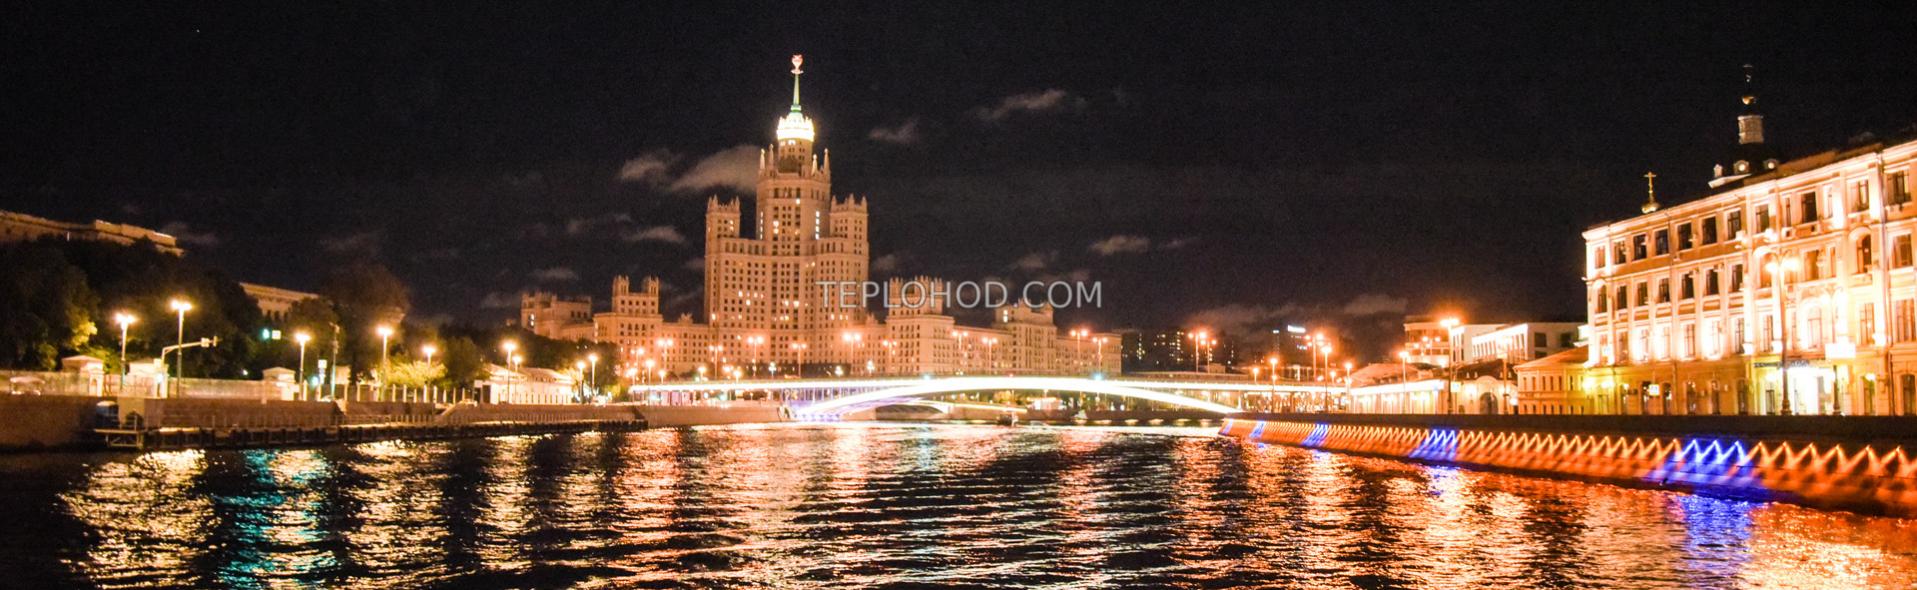 Ночная речная прогулка с гидом по Водоотводному каналу и Москве-реке вокруг "Золотого" острова "Мистическая Москва"